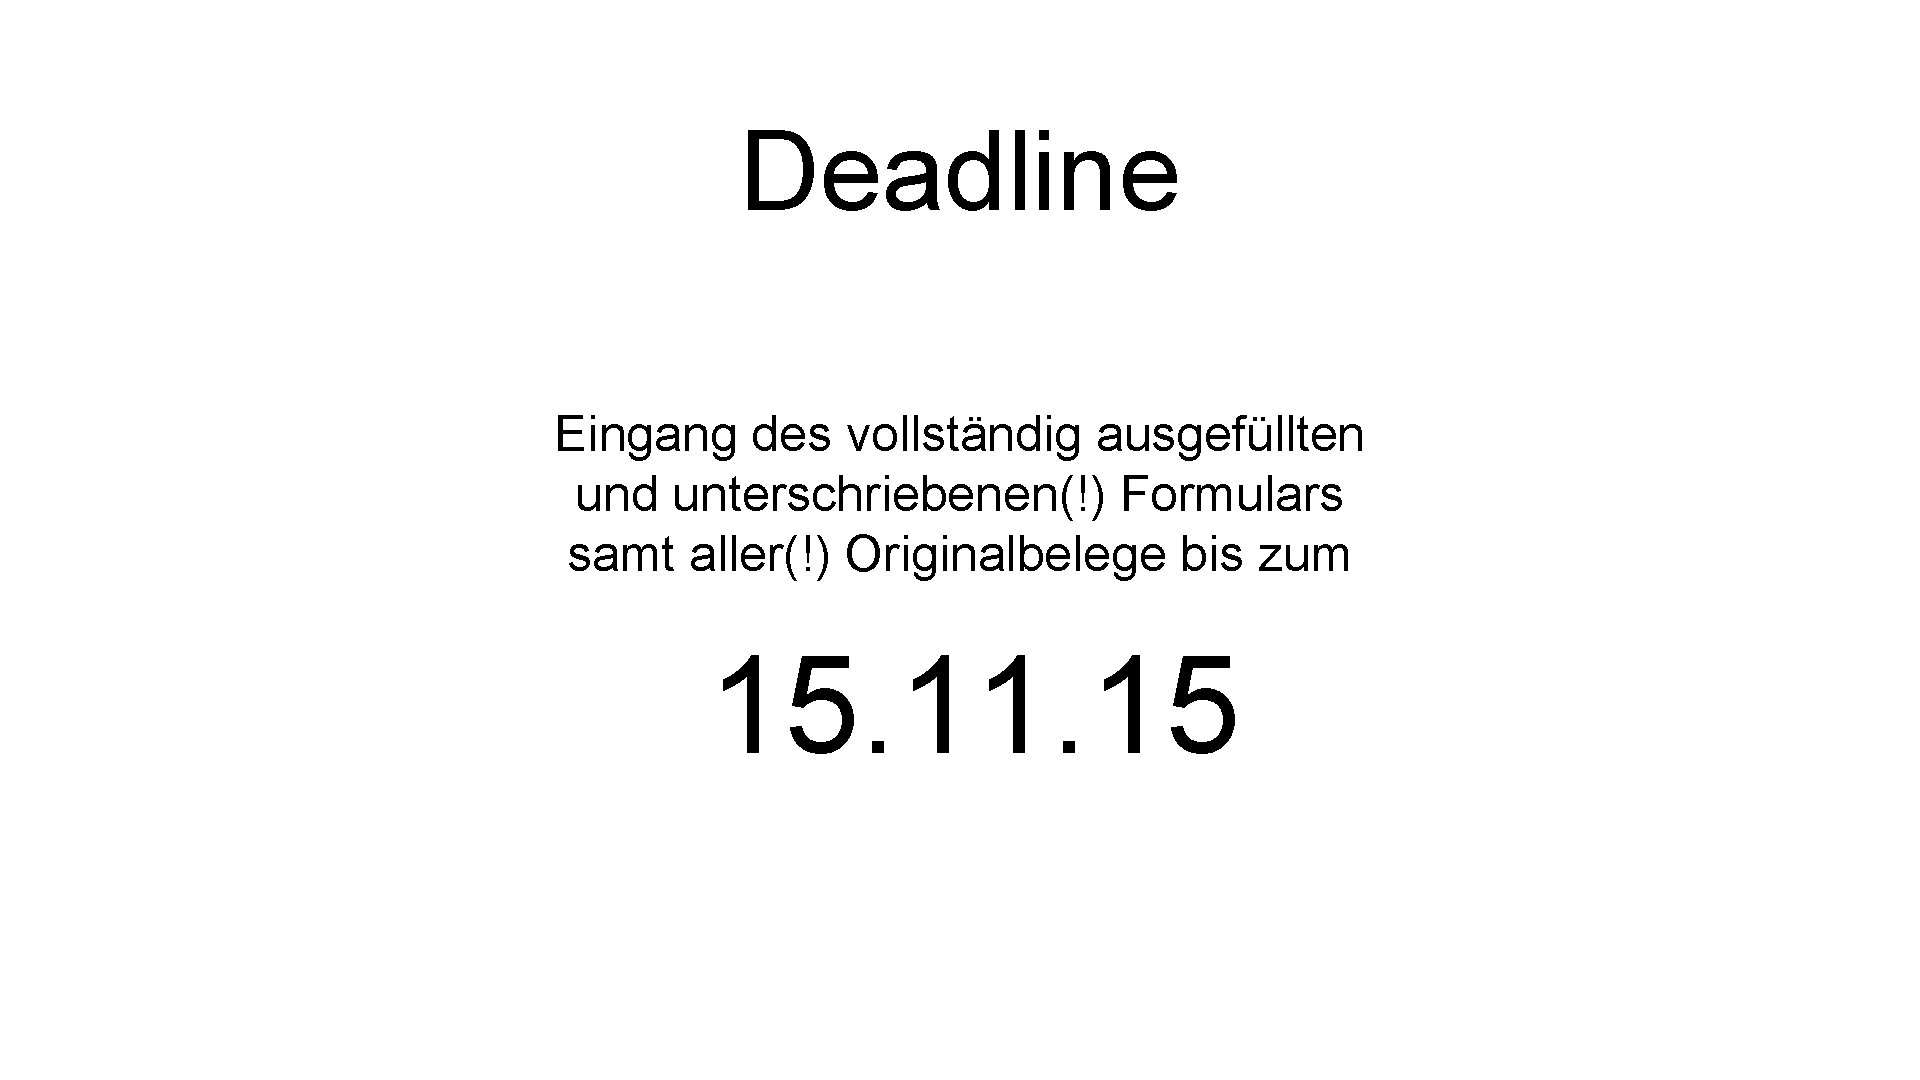 Deadline Eingang des vollständig ausgefüllten und unterschriebenen(!) Formulars samt aller(!) Originalbelege bis zum 15.